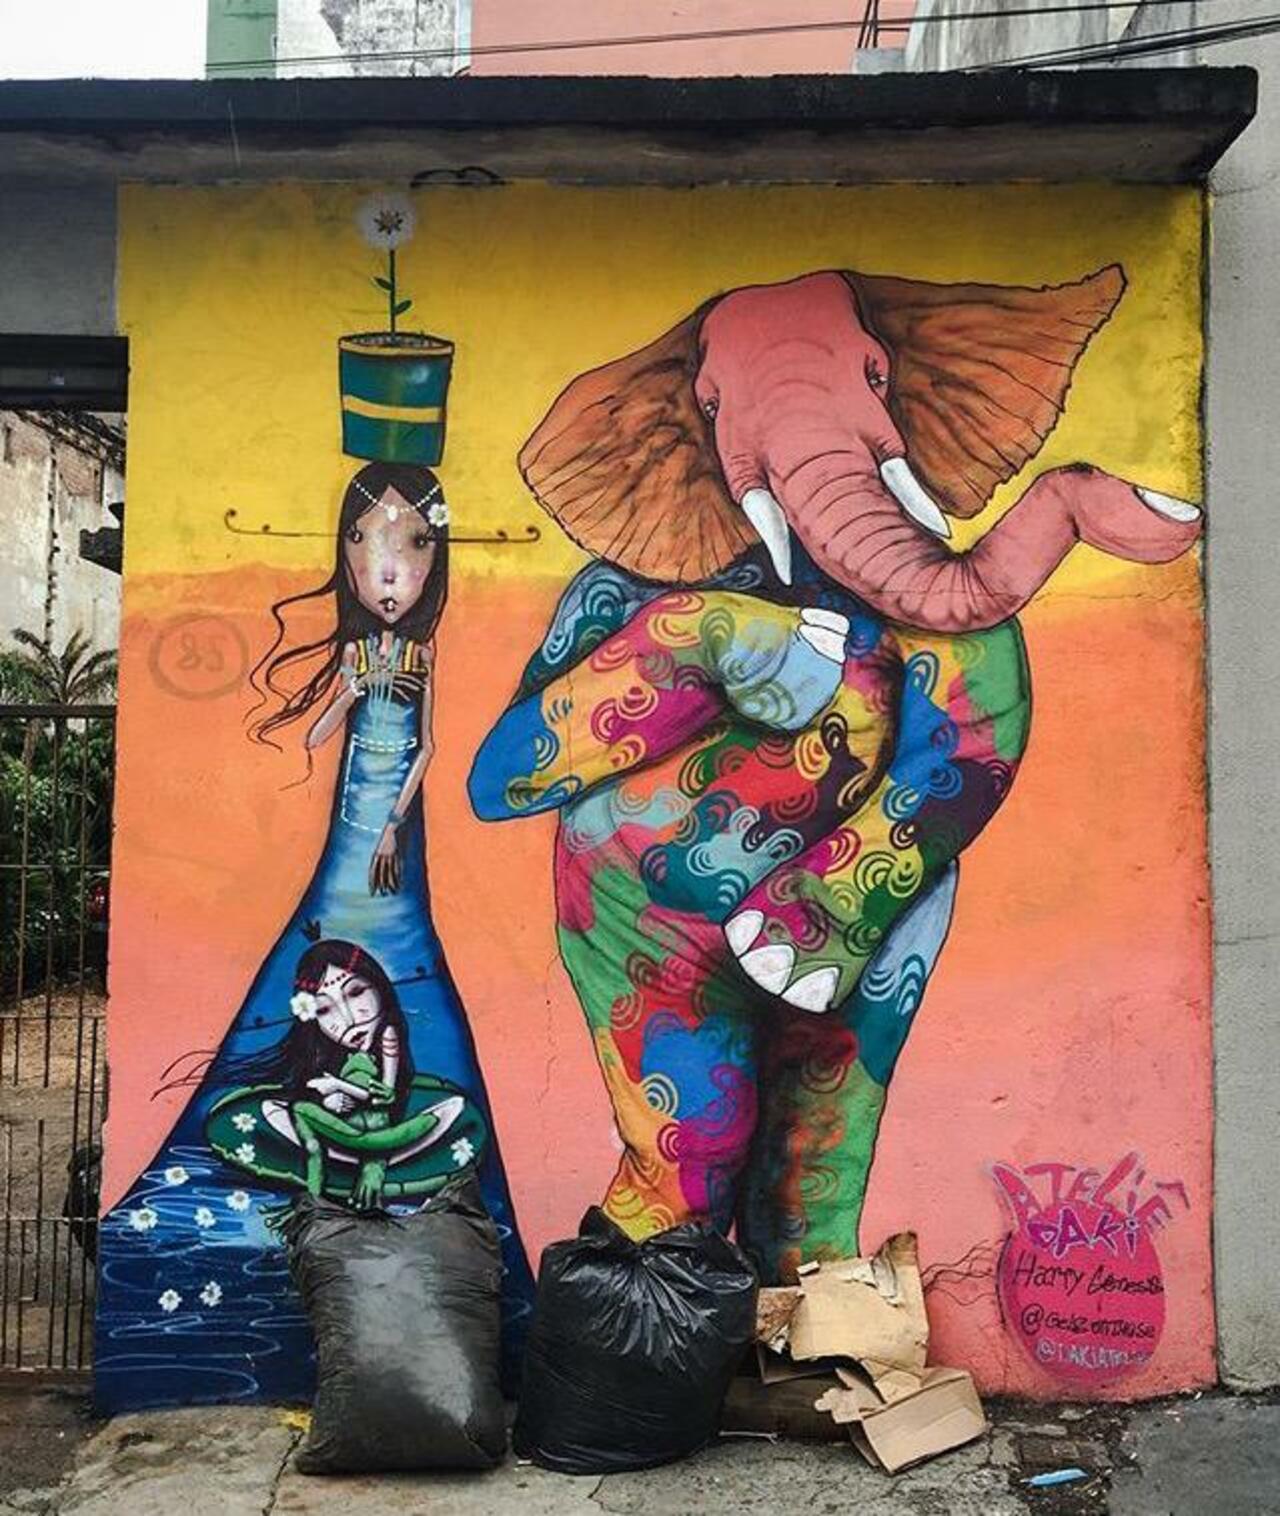 Street Art by Harry Geneis & Gelson in São Paulo 

#art #mural #graffiti #streetart http://t.co/HXtJVlNcMm